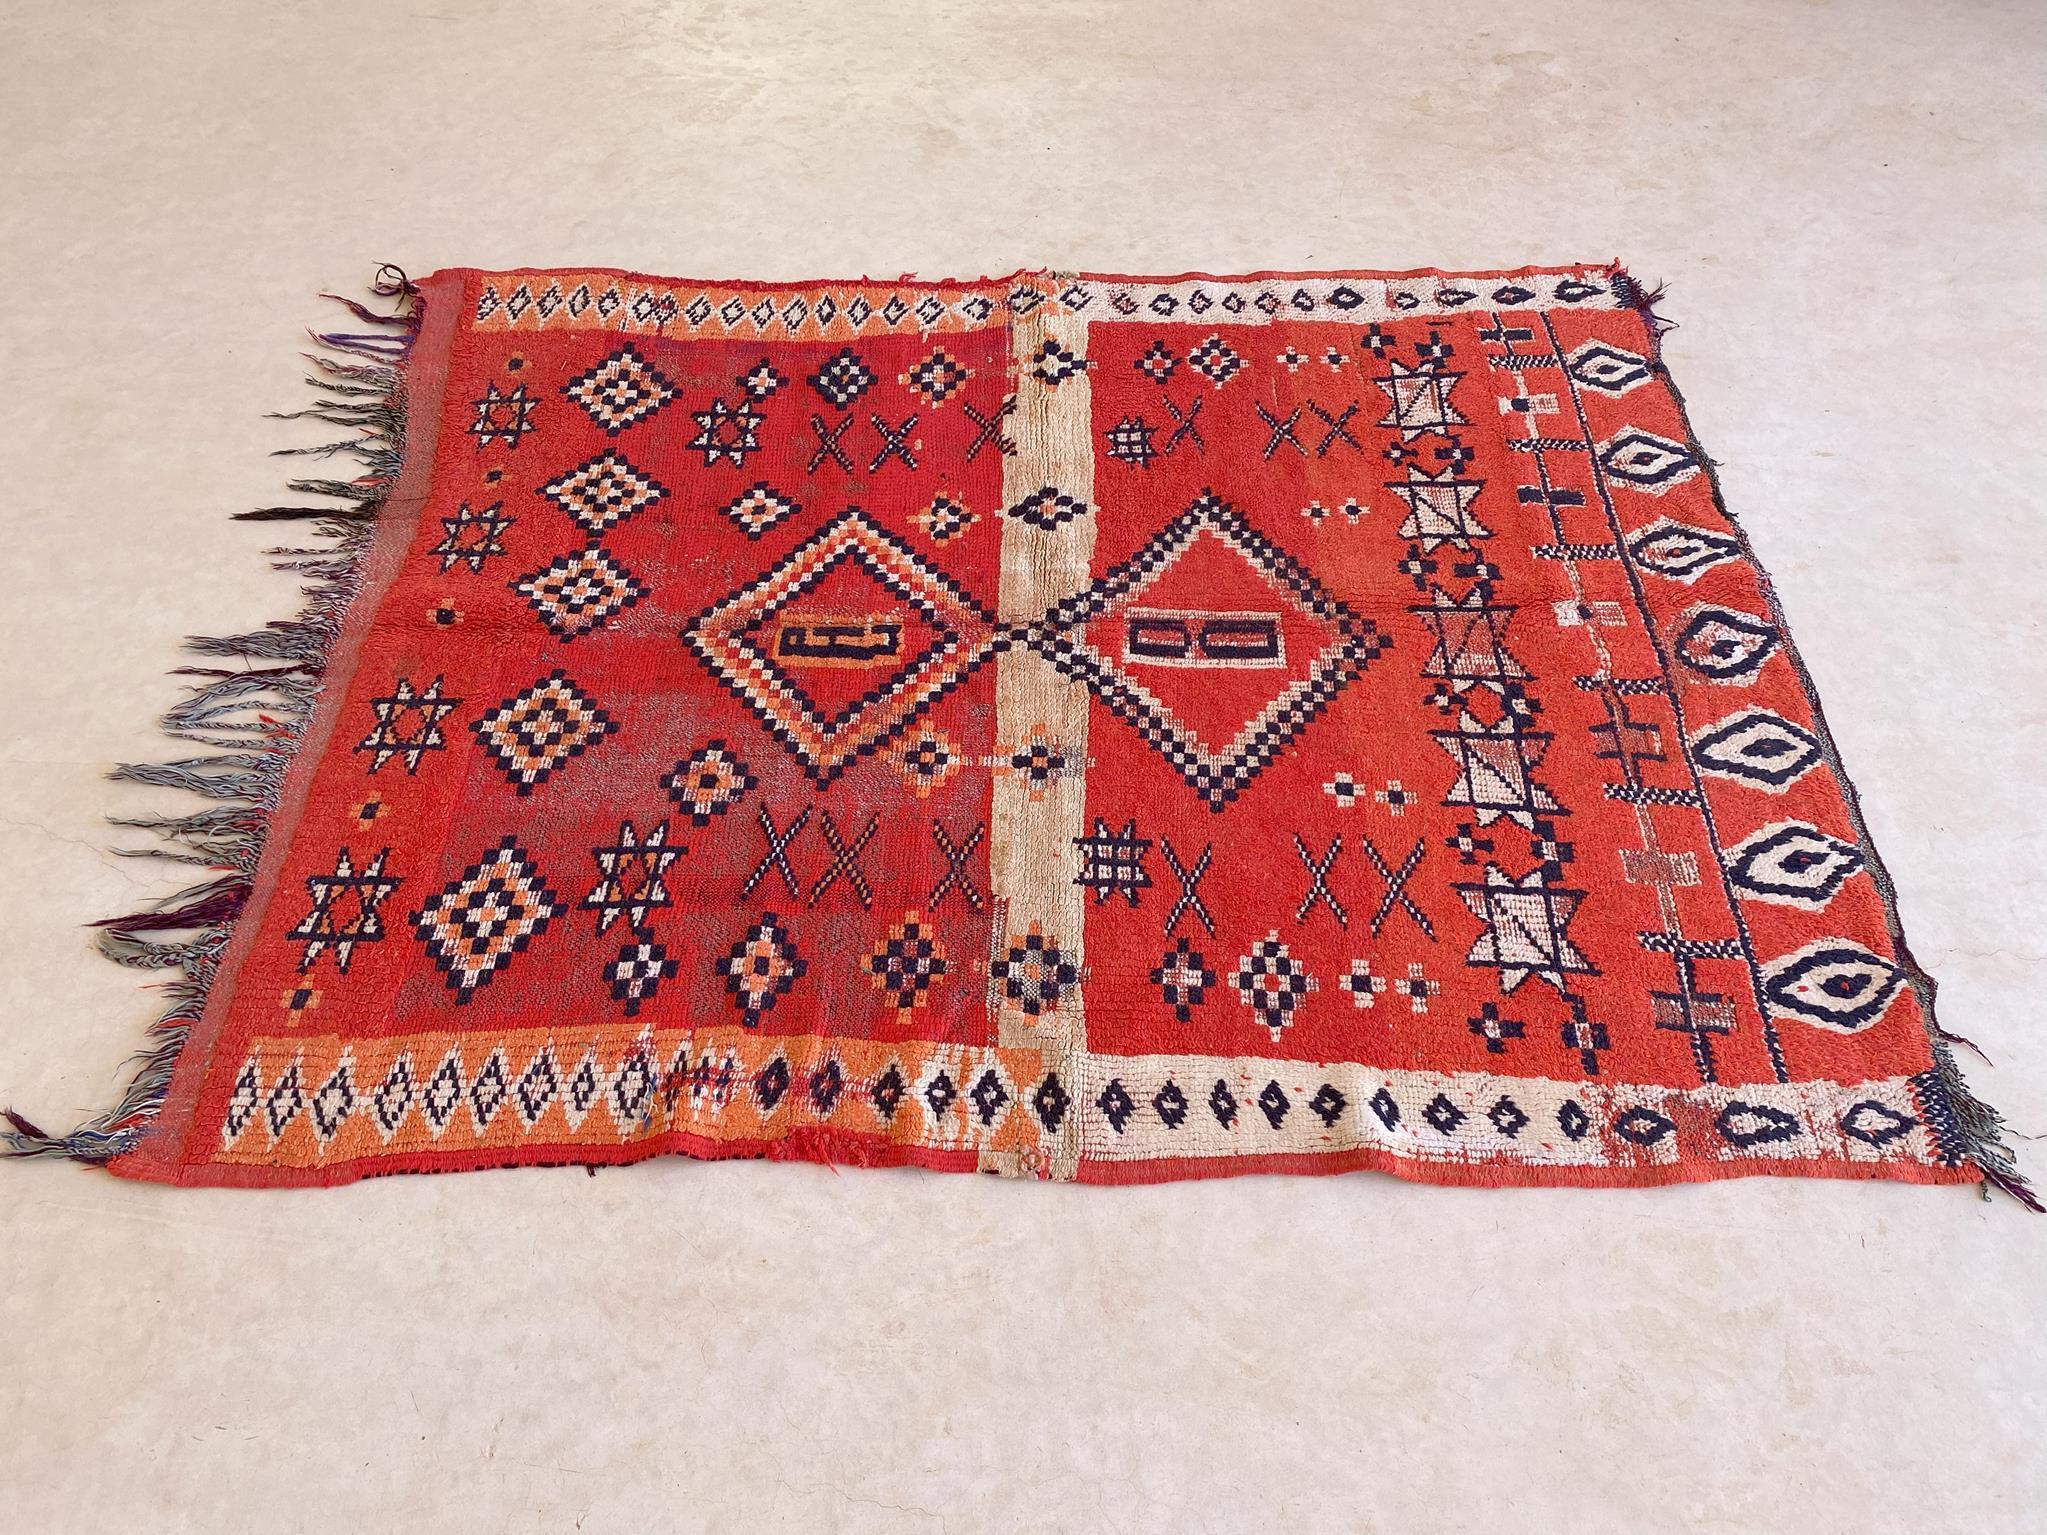 Marokkanischer Boujad-Teppich im Vintage-Stil - Rot - 4x5feet / 124x153cm (Stammeskunst)